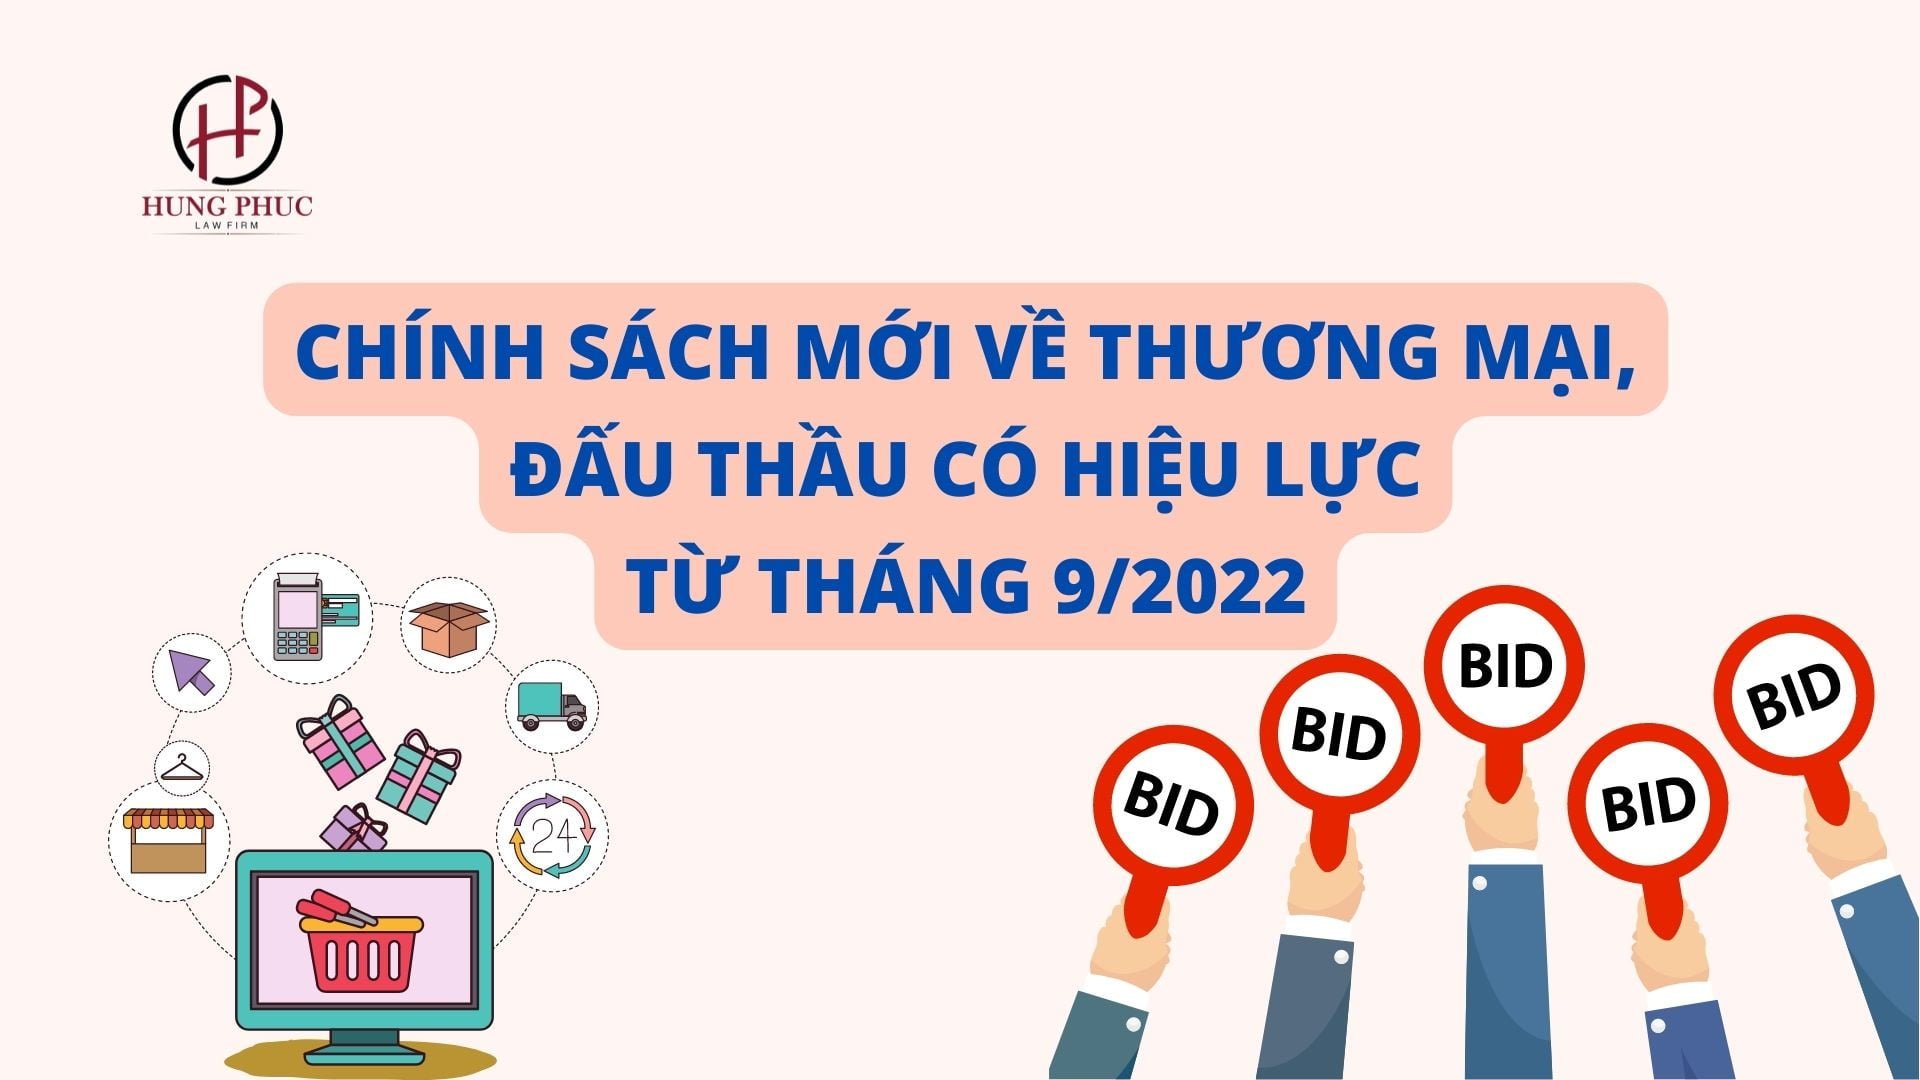 Chinh Sach Moi Ve Thuong Mai Dau Thau Co Hieu Luc Tu Thang 9 2022